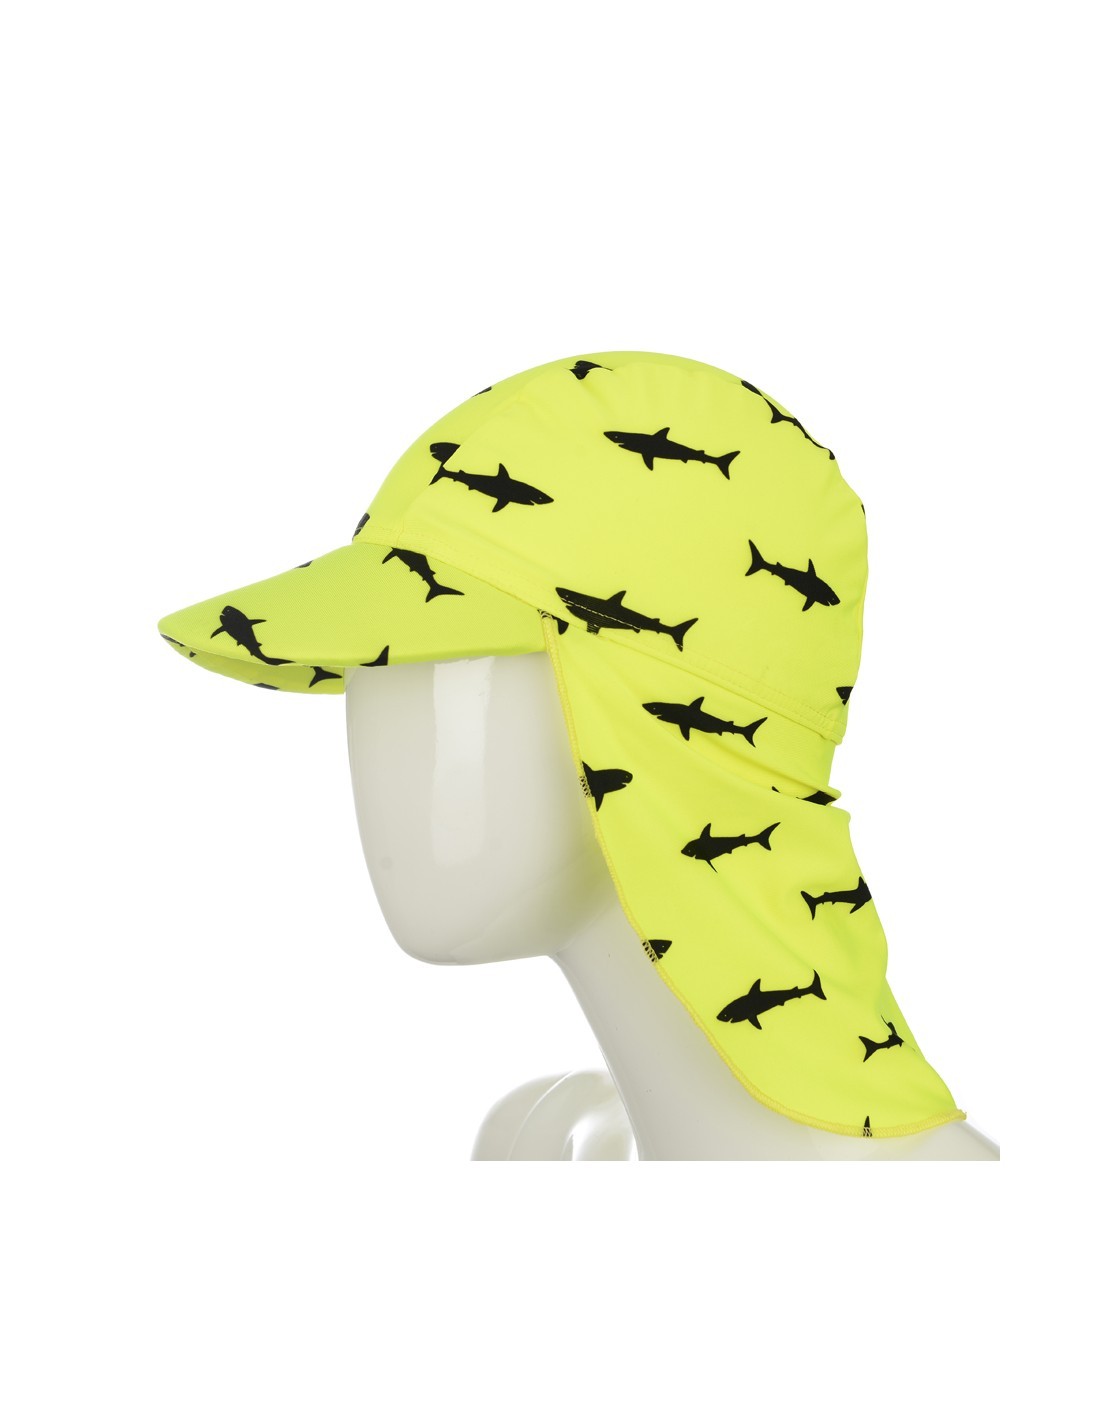 Αντηλιακό Καπέλο Μαγιό Shark Yellow UV Protection Hat, Slipstop